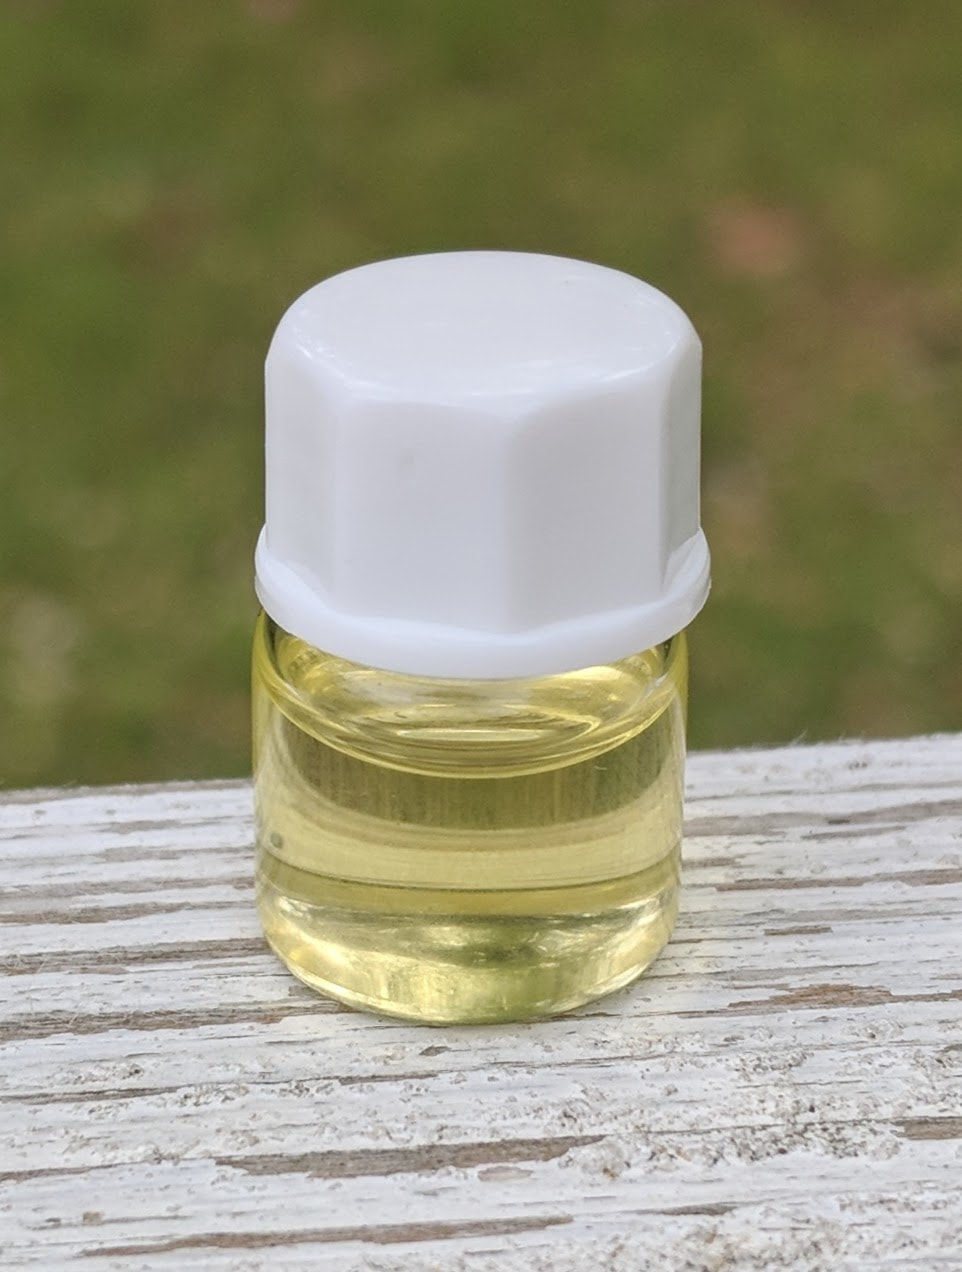 beard oil samples - beard oil sample pack - beard oil sample kit - beard oil testers - beard oil trial pack - beard oil variety pack